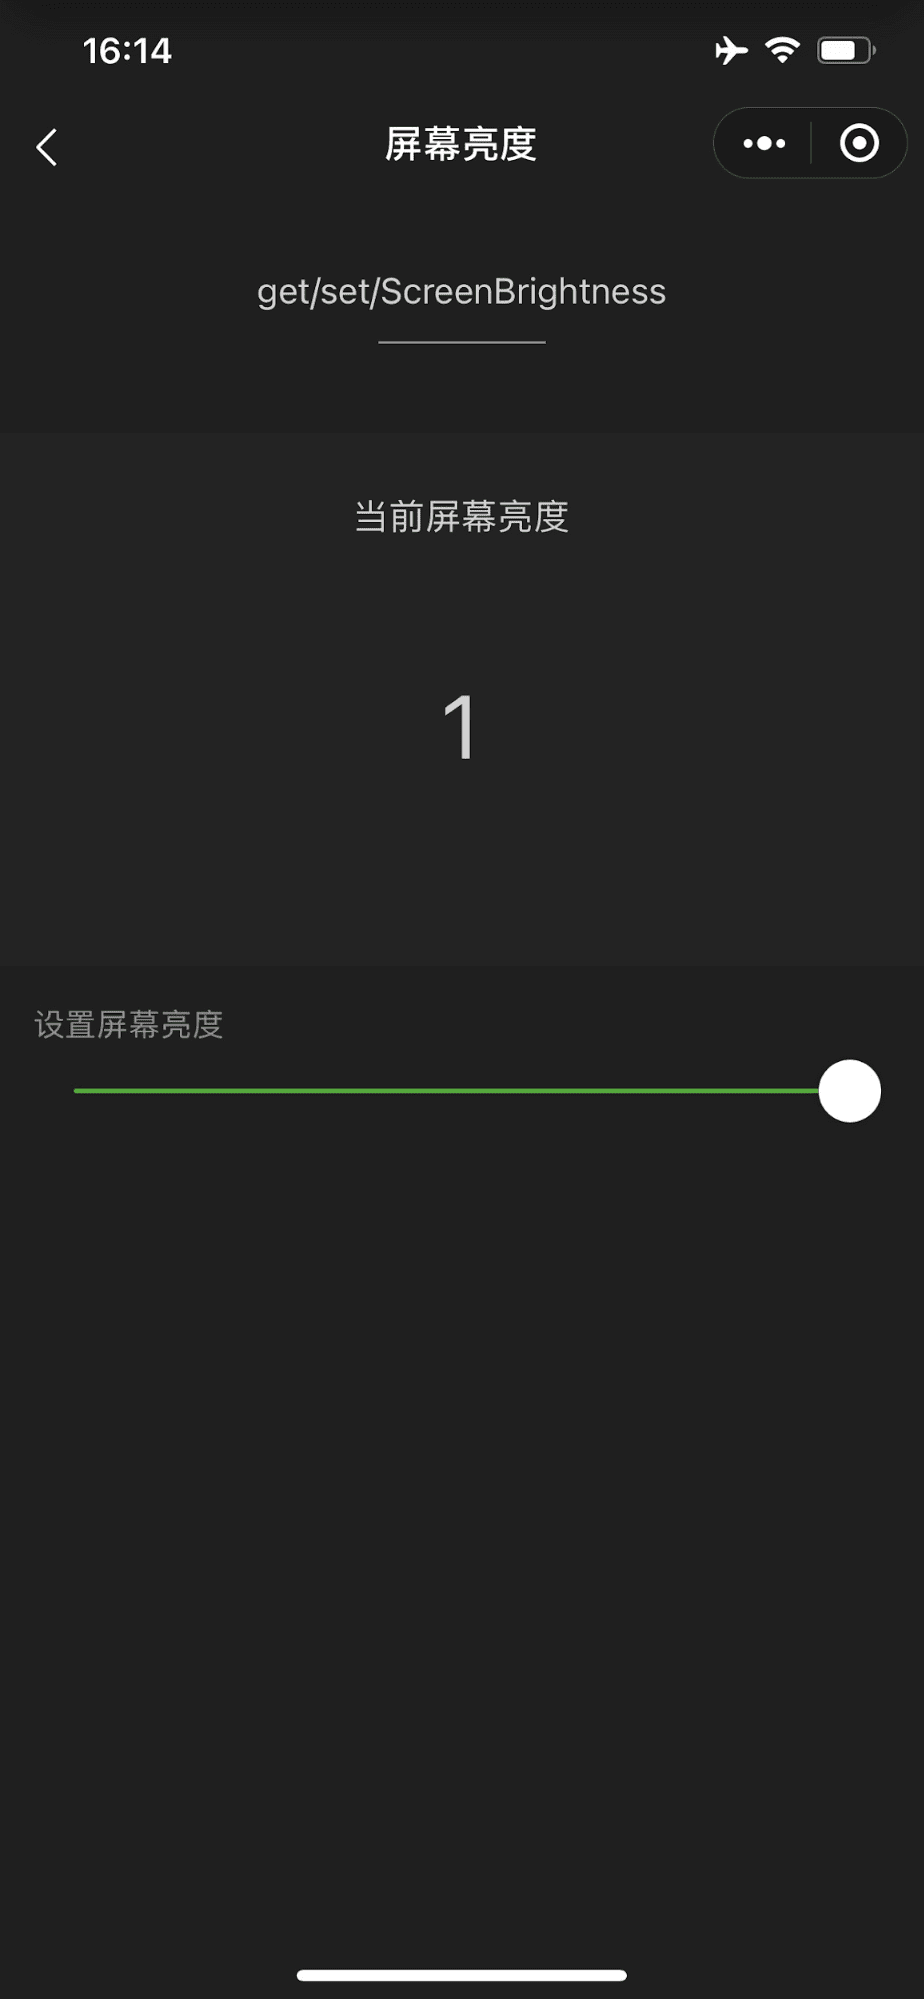 WeChat के डेमो मिनी ऐप्लिकेशन में, एक स्लाइडर दिख रहा है. यह स्लाइडर, डिवाइस की स्क्रीन की चमक को सबसे ज़्यादा कंट्रोल करता है.